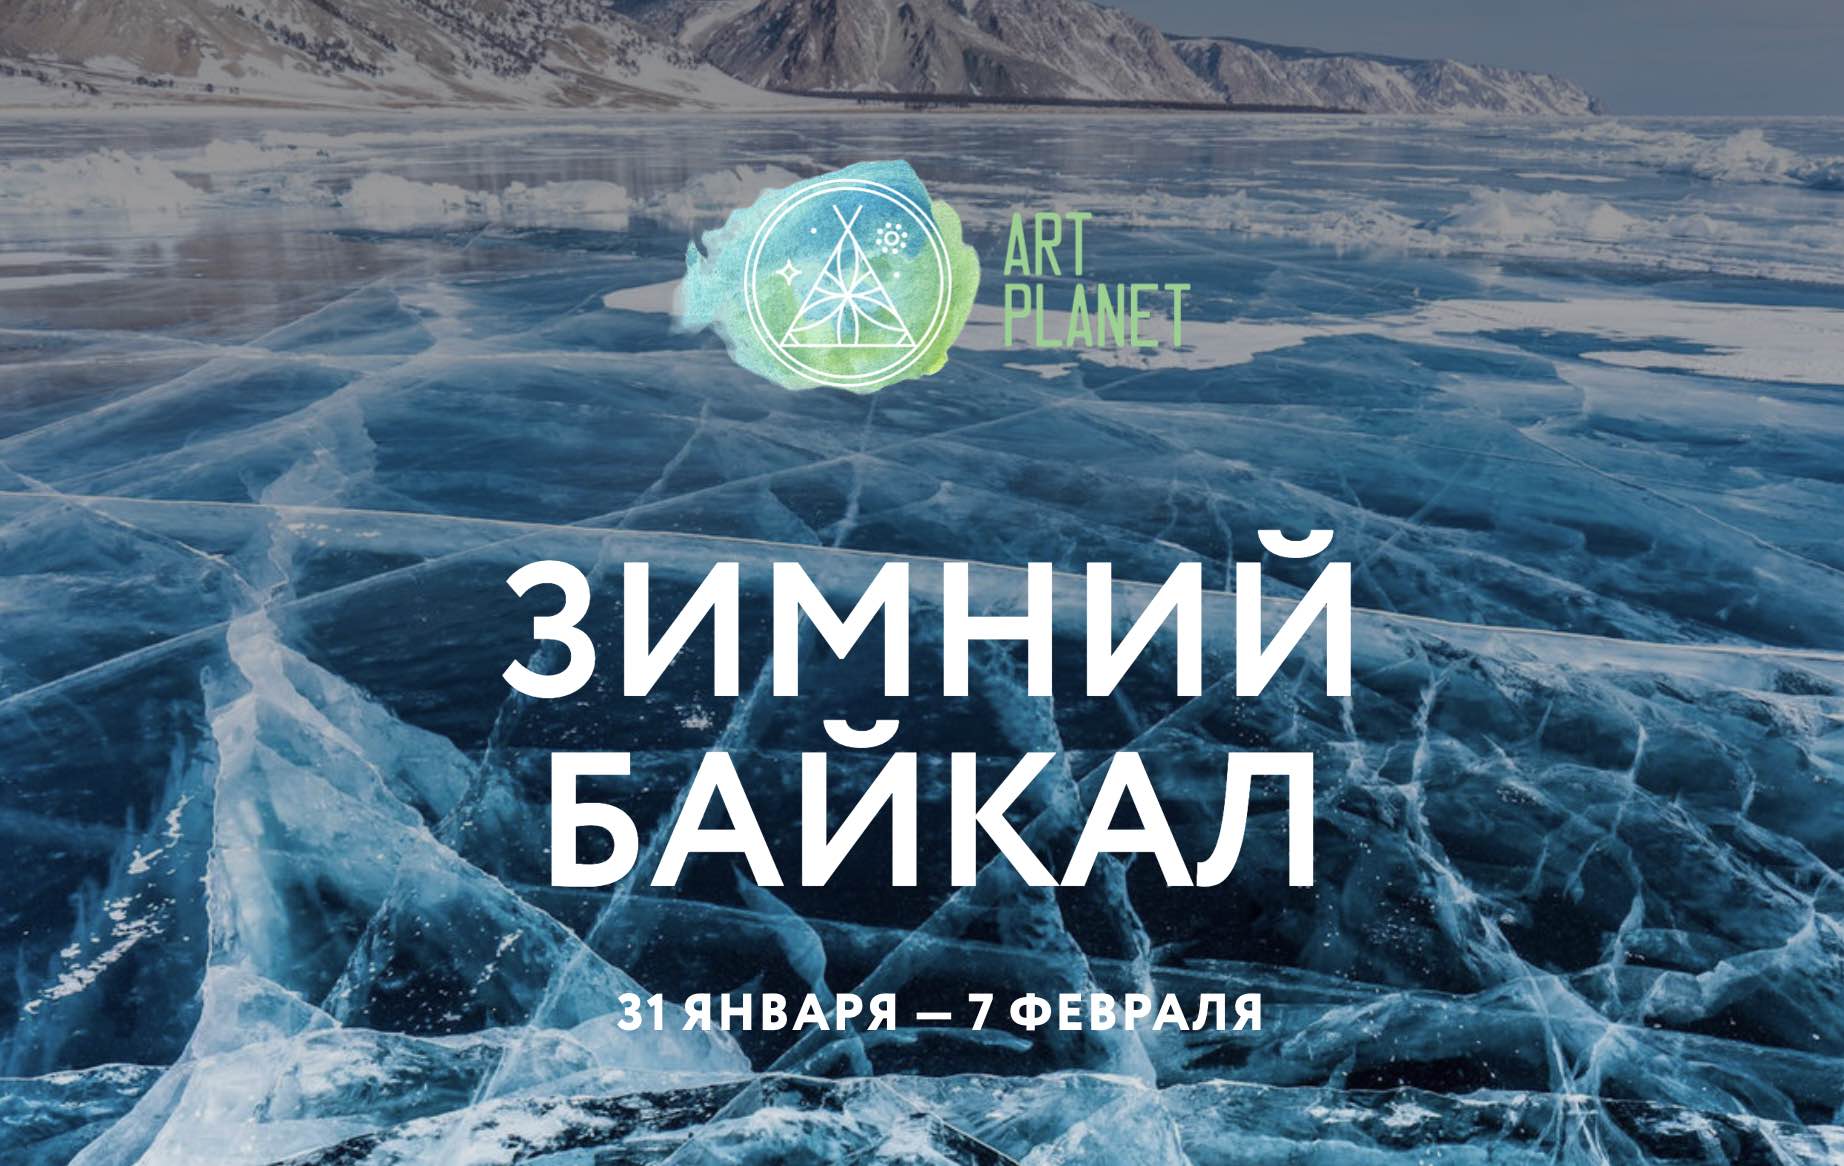 Картинки Байкал зимой с днем рождения